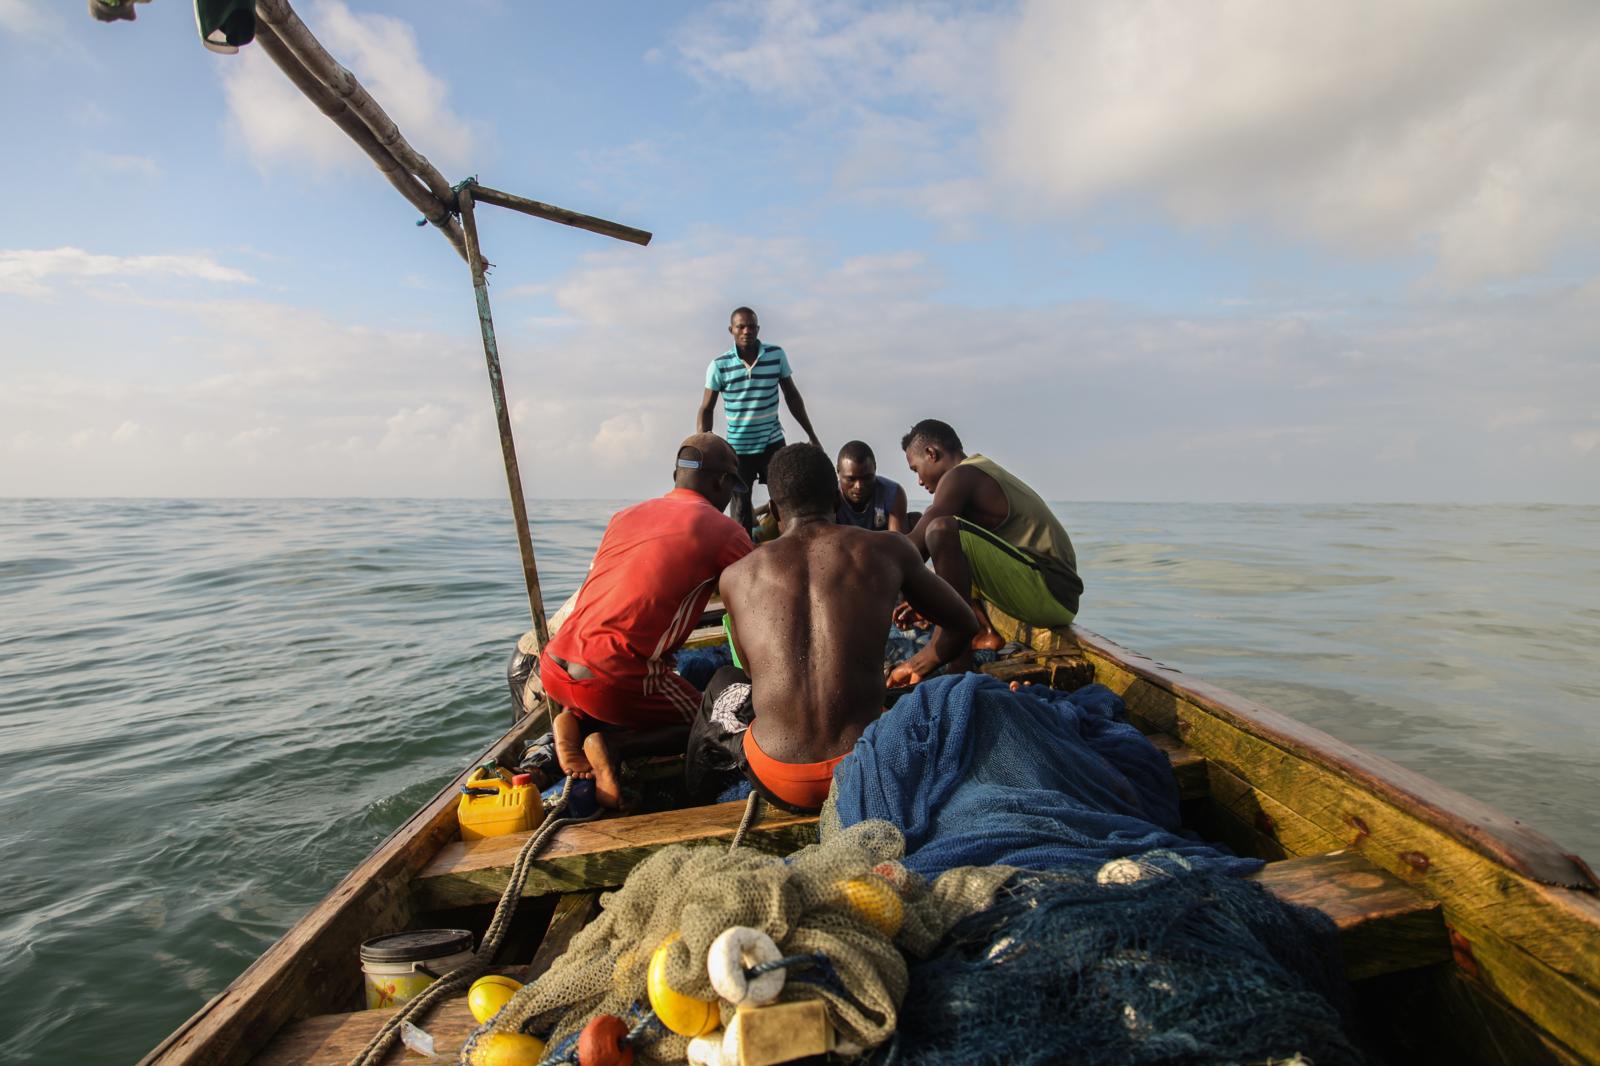 Ghana Fishermen  | Buy this image